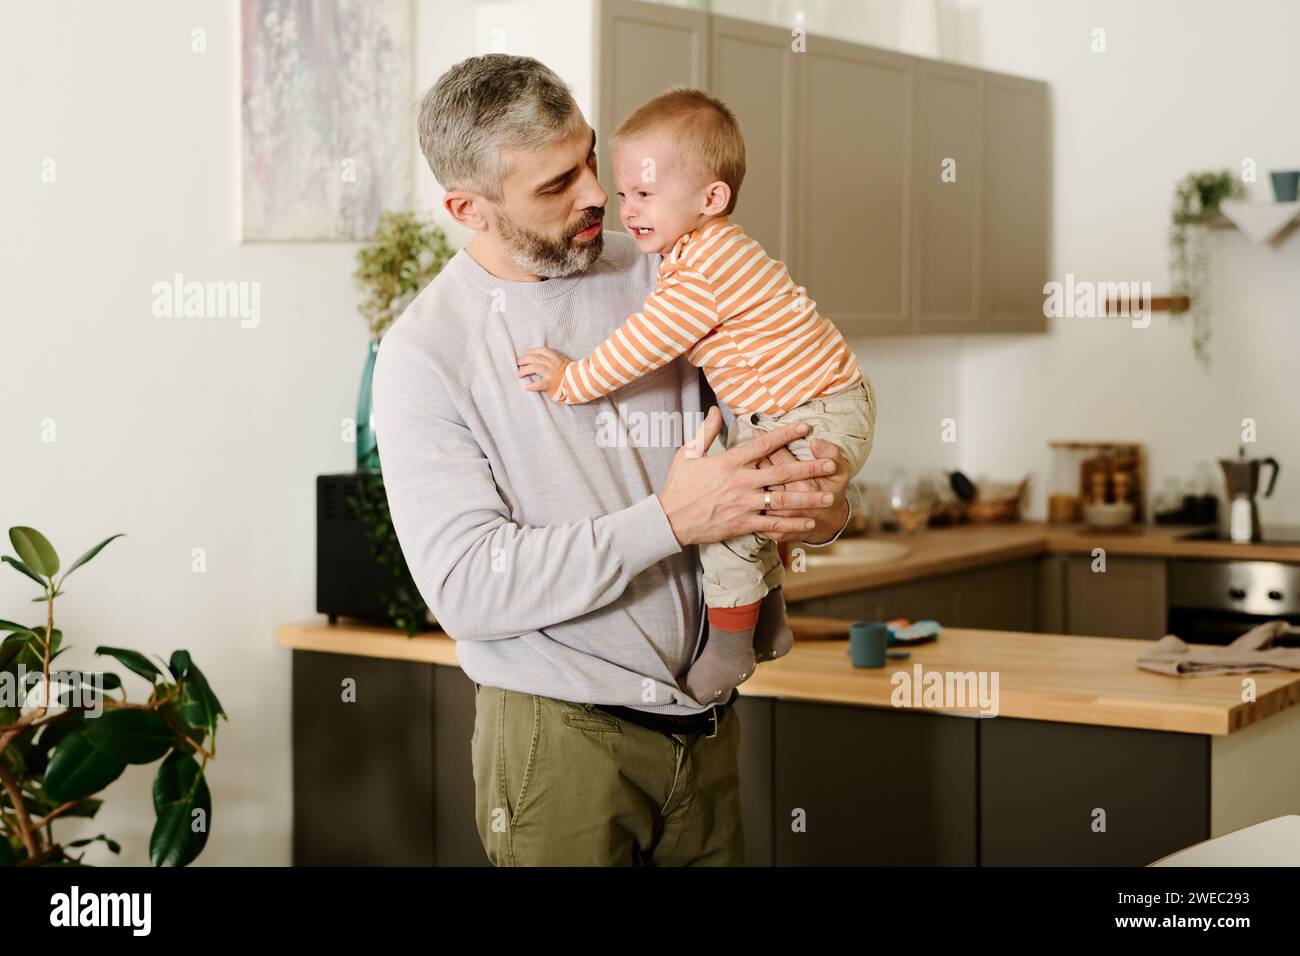 Reifer Mann in grauem Pullover und beigefarbener Hose hält seinen süßen frechen Sohn an den Händen und sieht ihn an, während er in der Küche steht Stockfoto